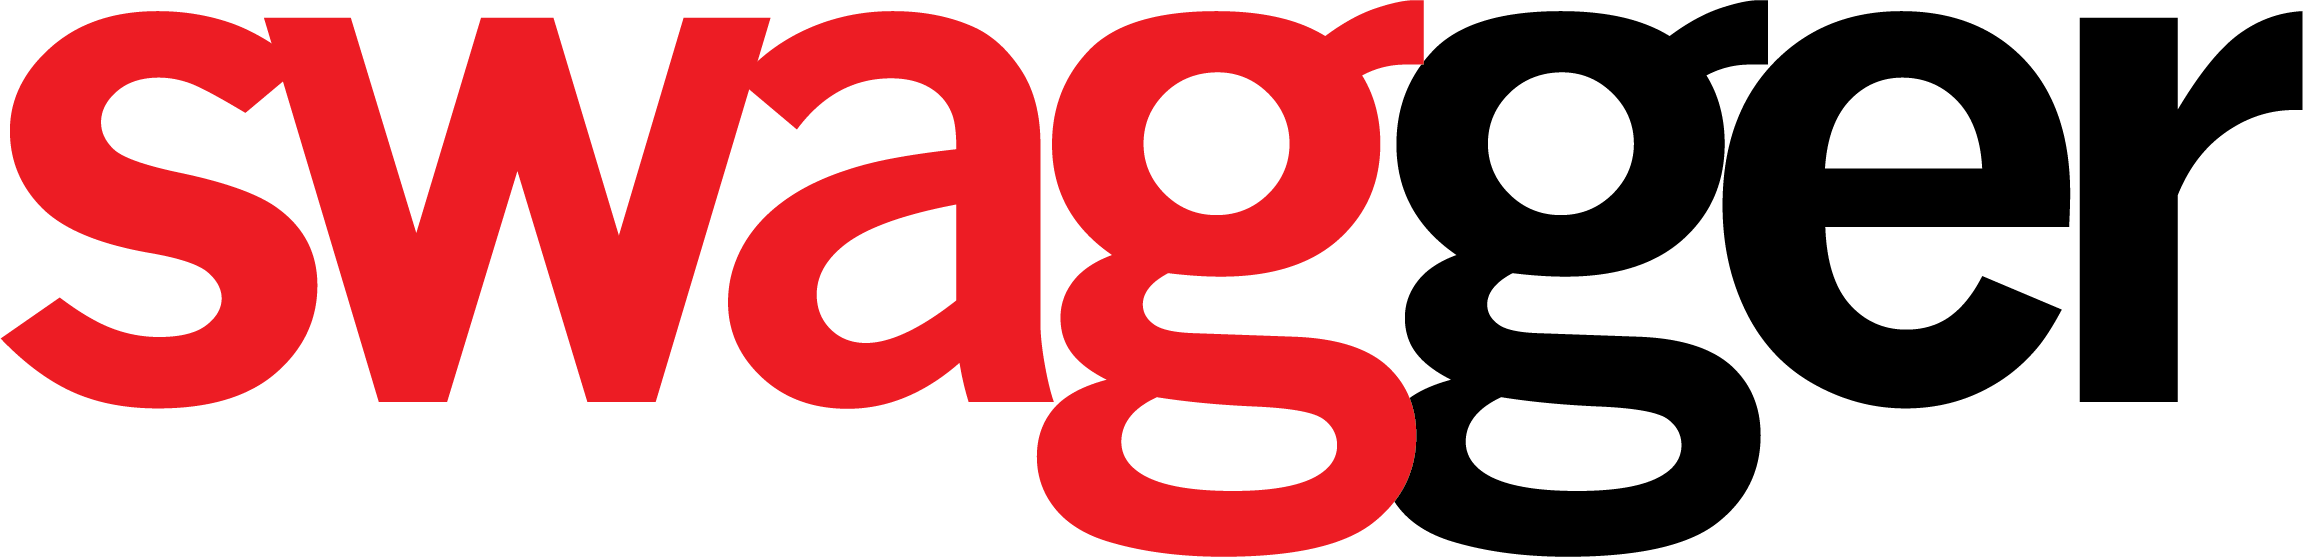 Swagger Branding Inc.'s Logo